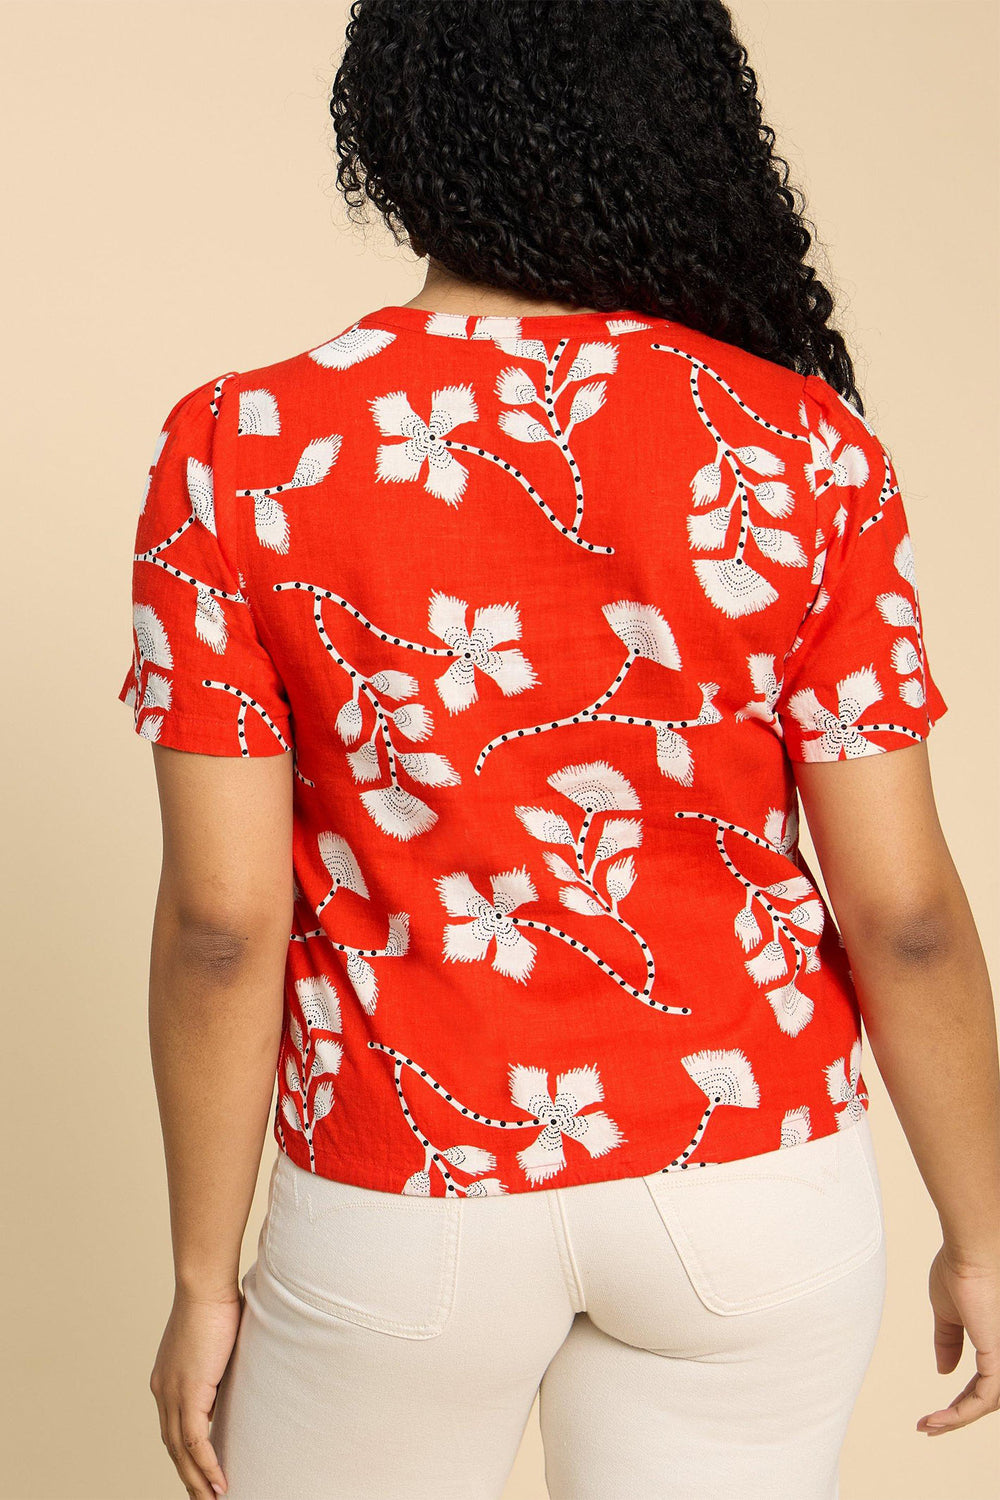 White Stuff 440413 Ferne Red Print Linen Blend Short Sleeve Shirt - Shirley Allum Boutique